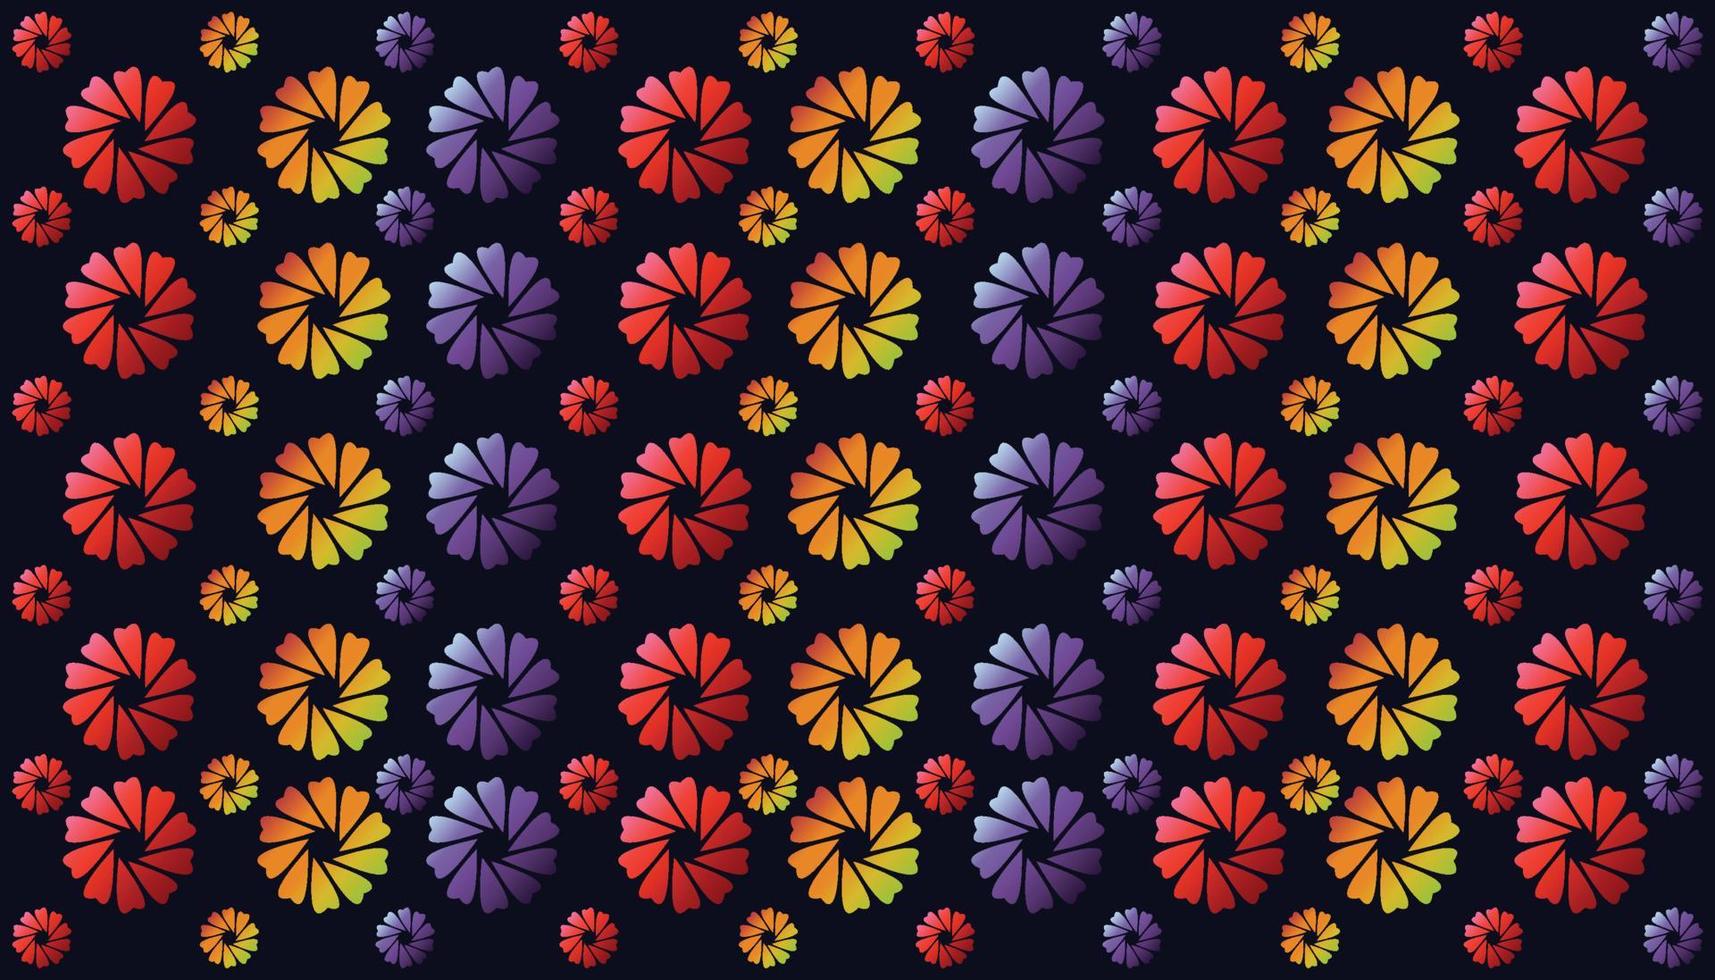 gemalte Blumen nahtloser Vektorhintergrund, sich wiederholende Muster, sich wiederholende Blumenmuster vektor